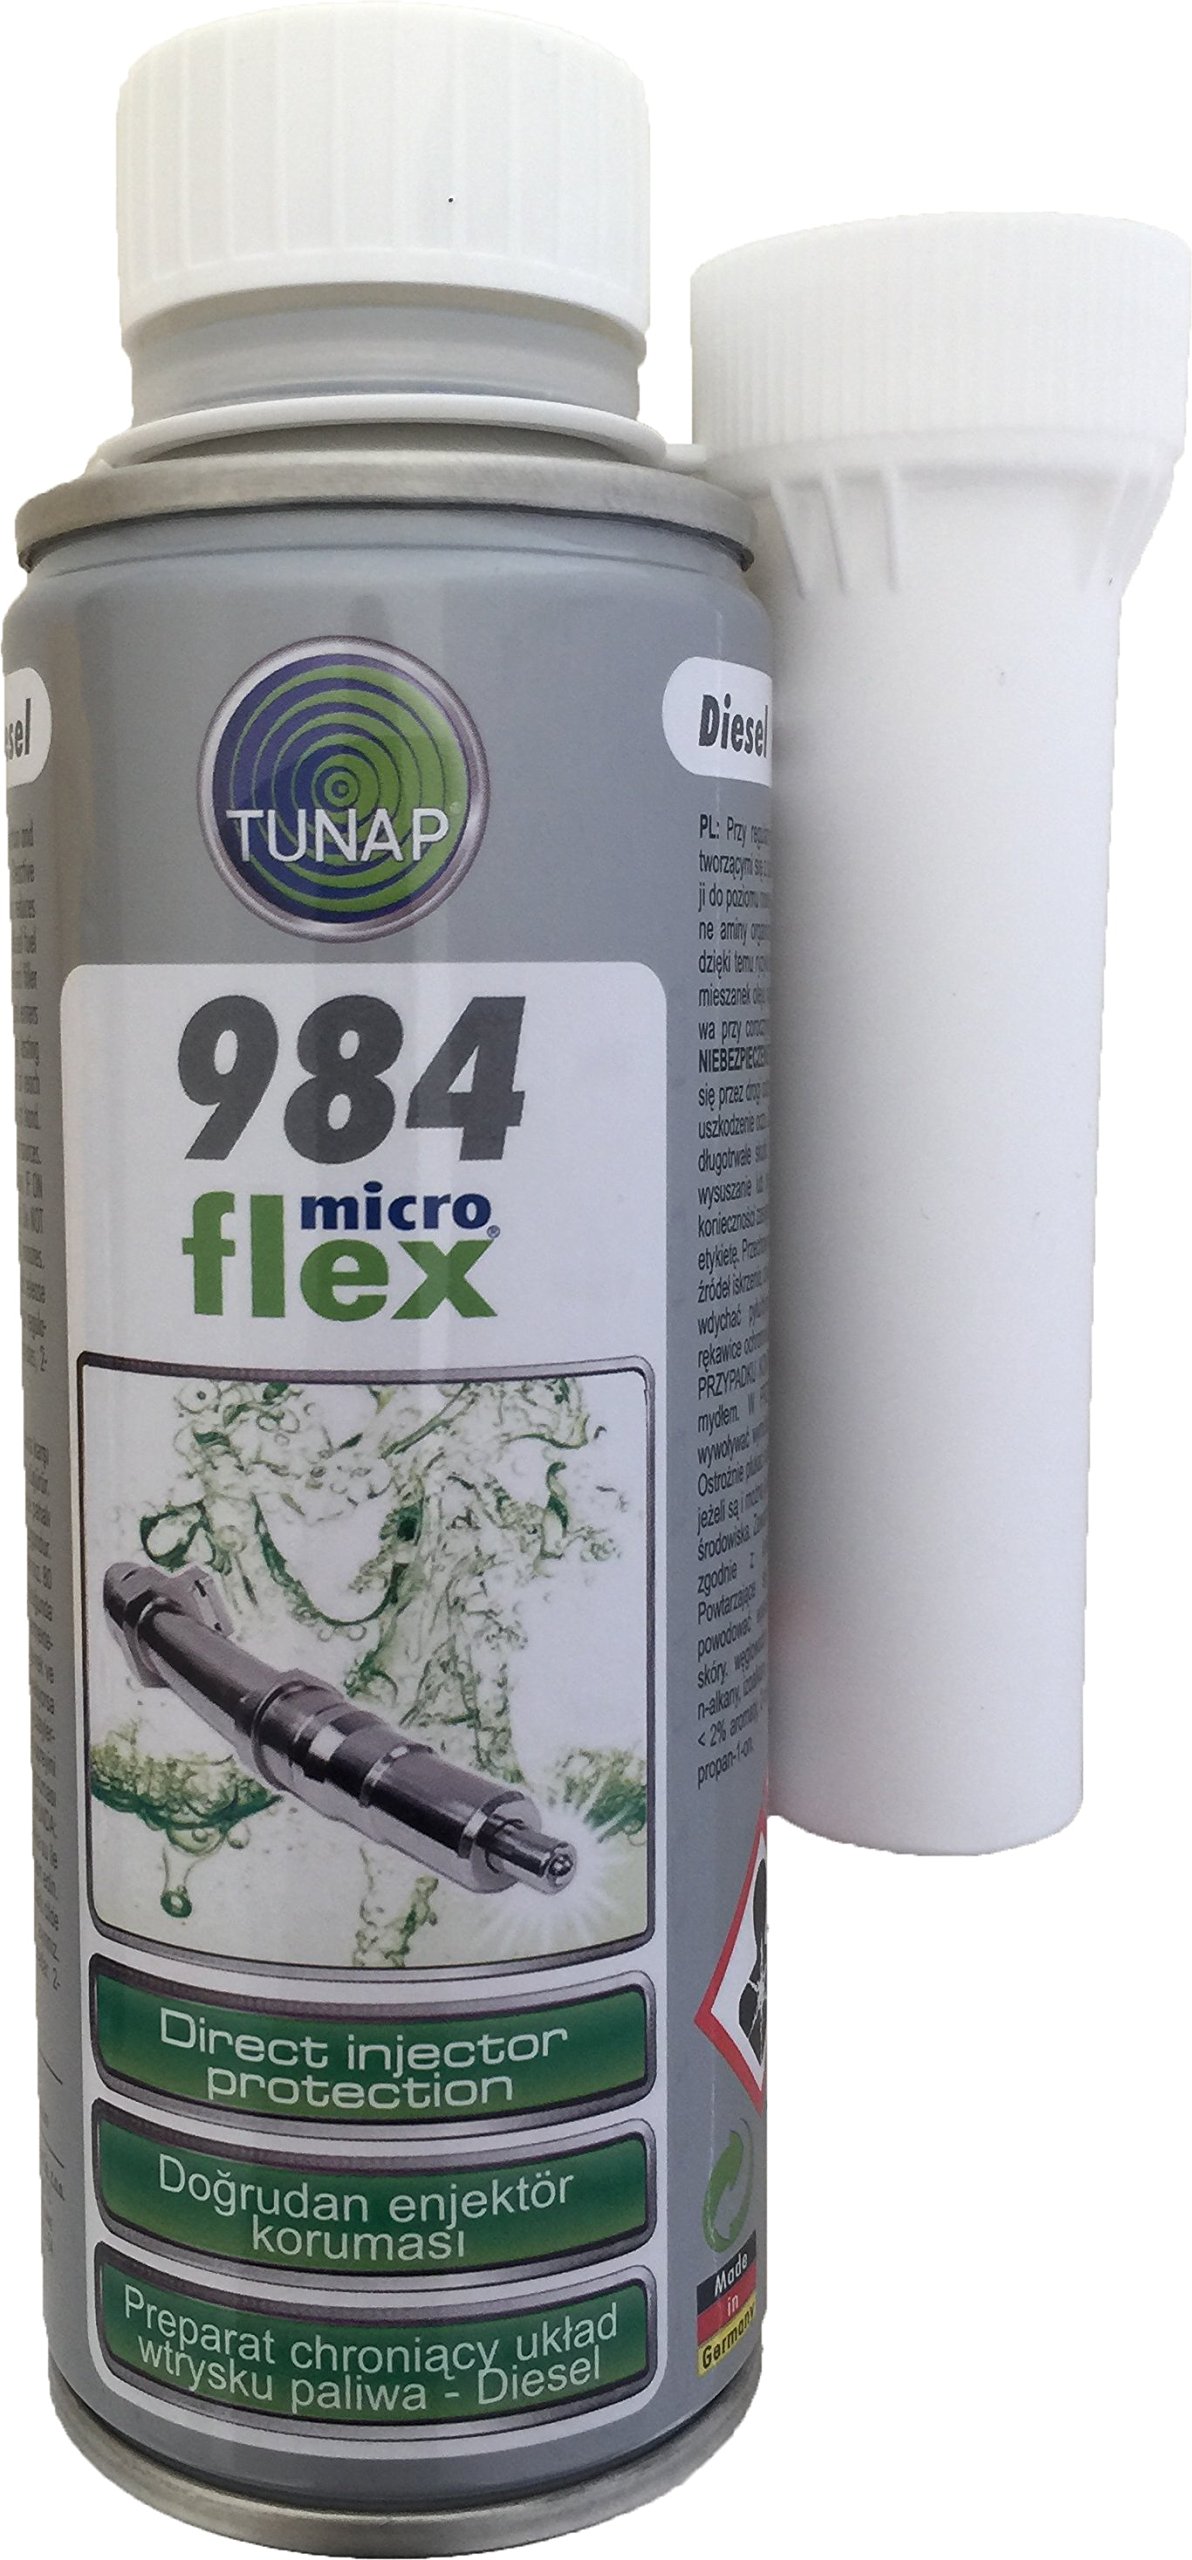 TUNAP Microflex 984 Schutz für Diesel-Injektor